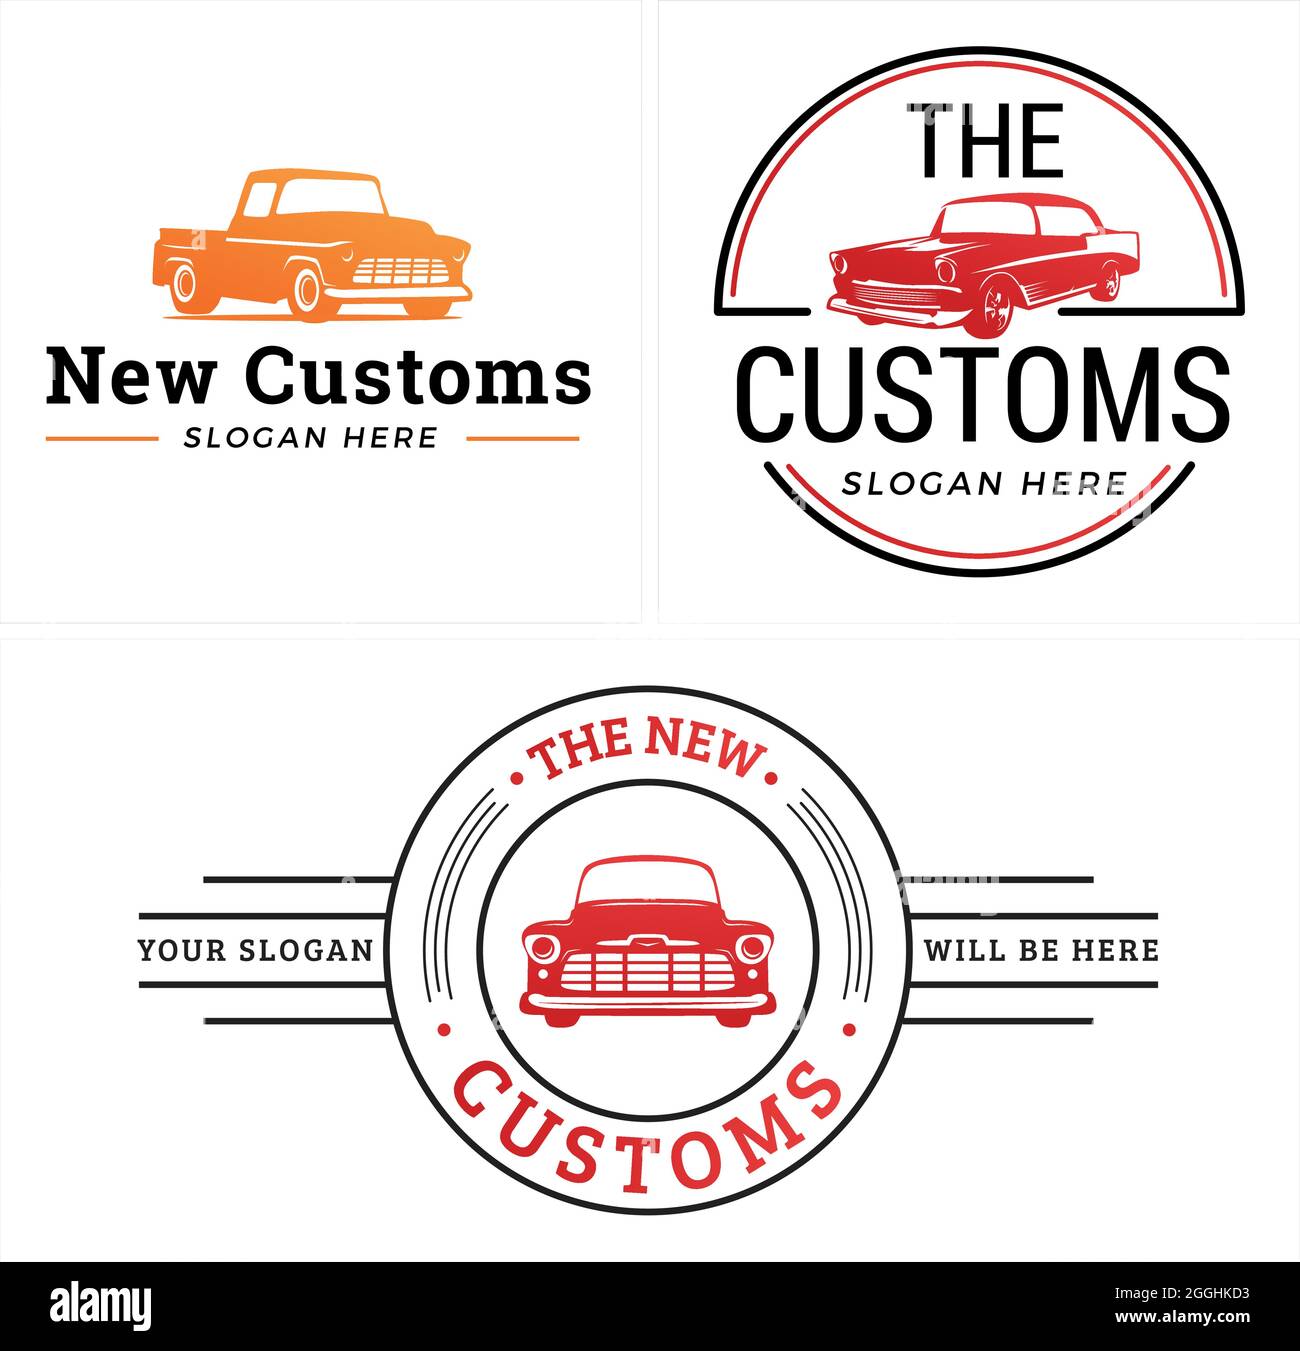 Le service automobile repeint le design classique du logo de la voiture de l'atelier Illustration de Vecteur